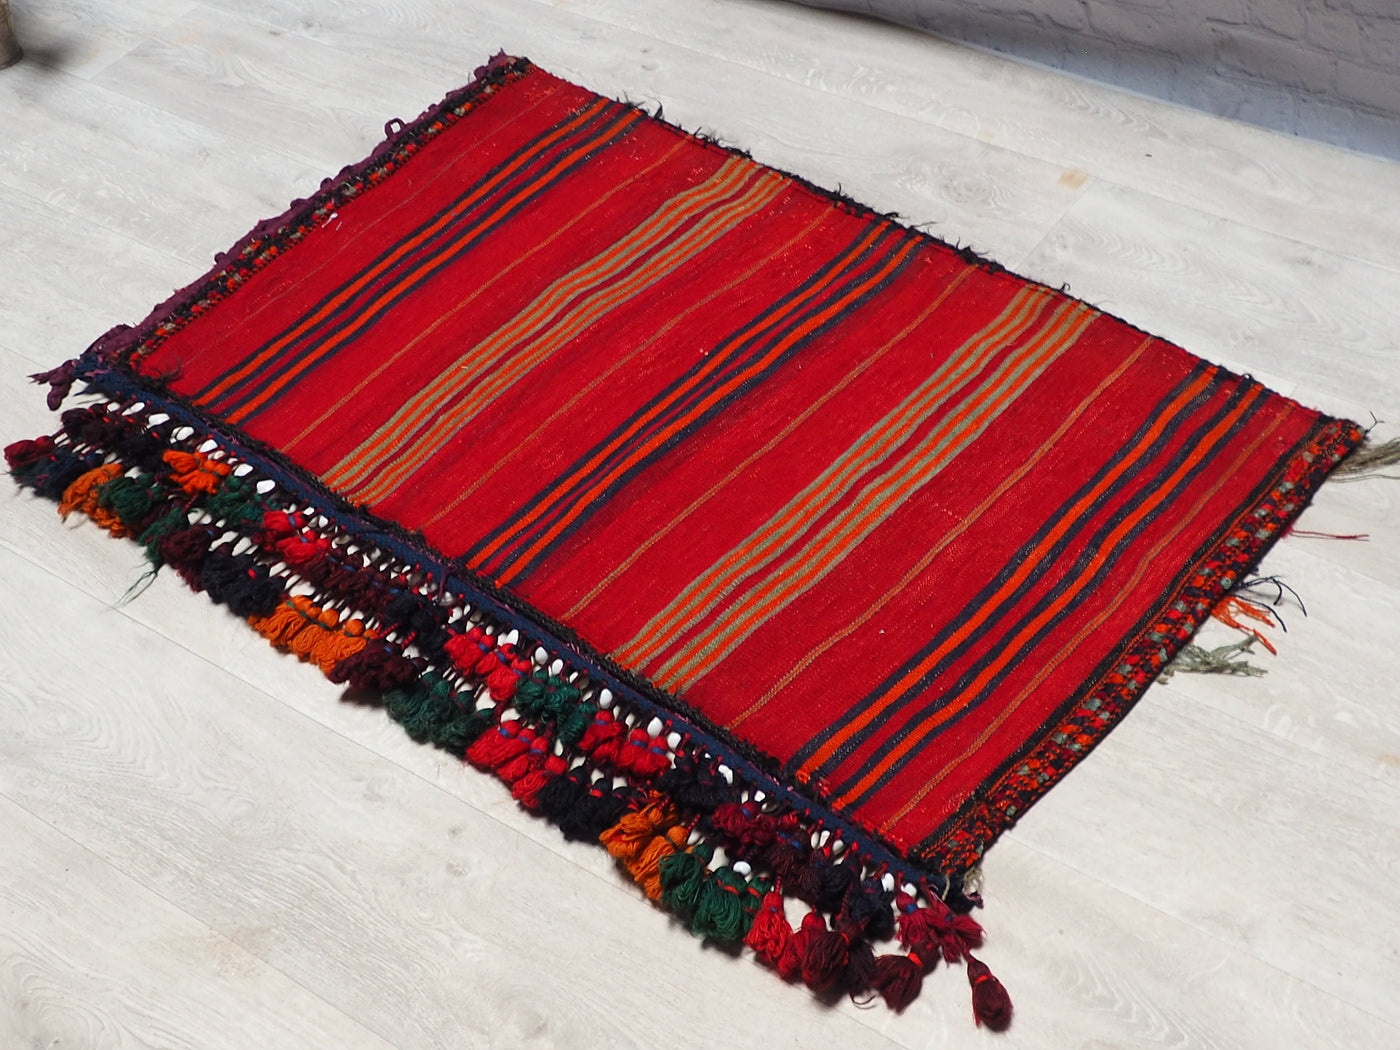 105x62 cm antik orient Afghan belochi Teppich nomaden sitzkissen bodenkissen  Bohemian cushion 1001-nacht Nr.22/4  Orientsbazar   